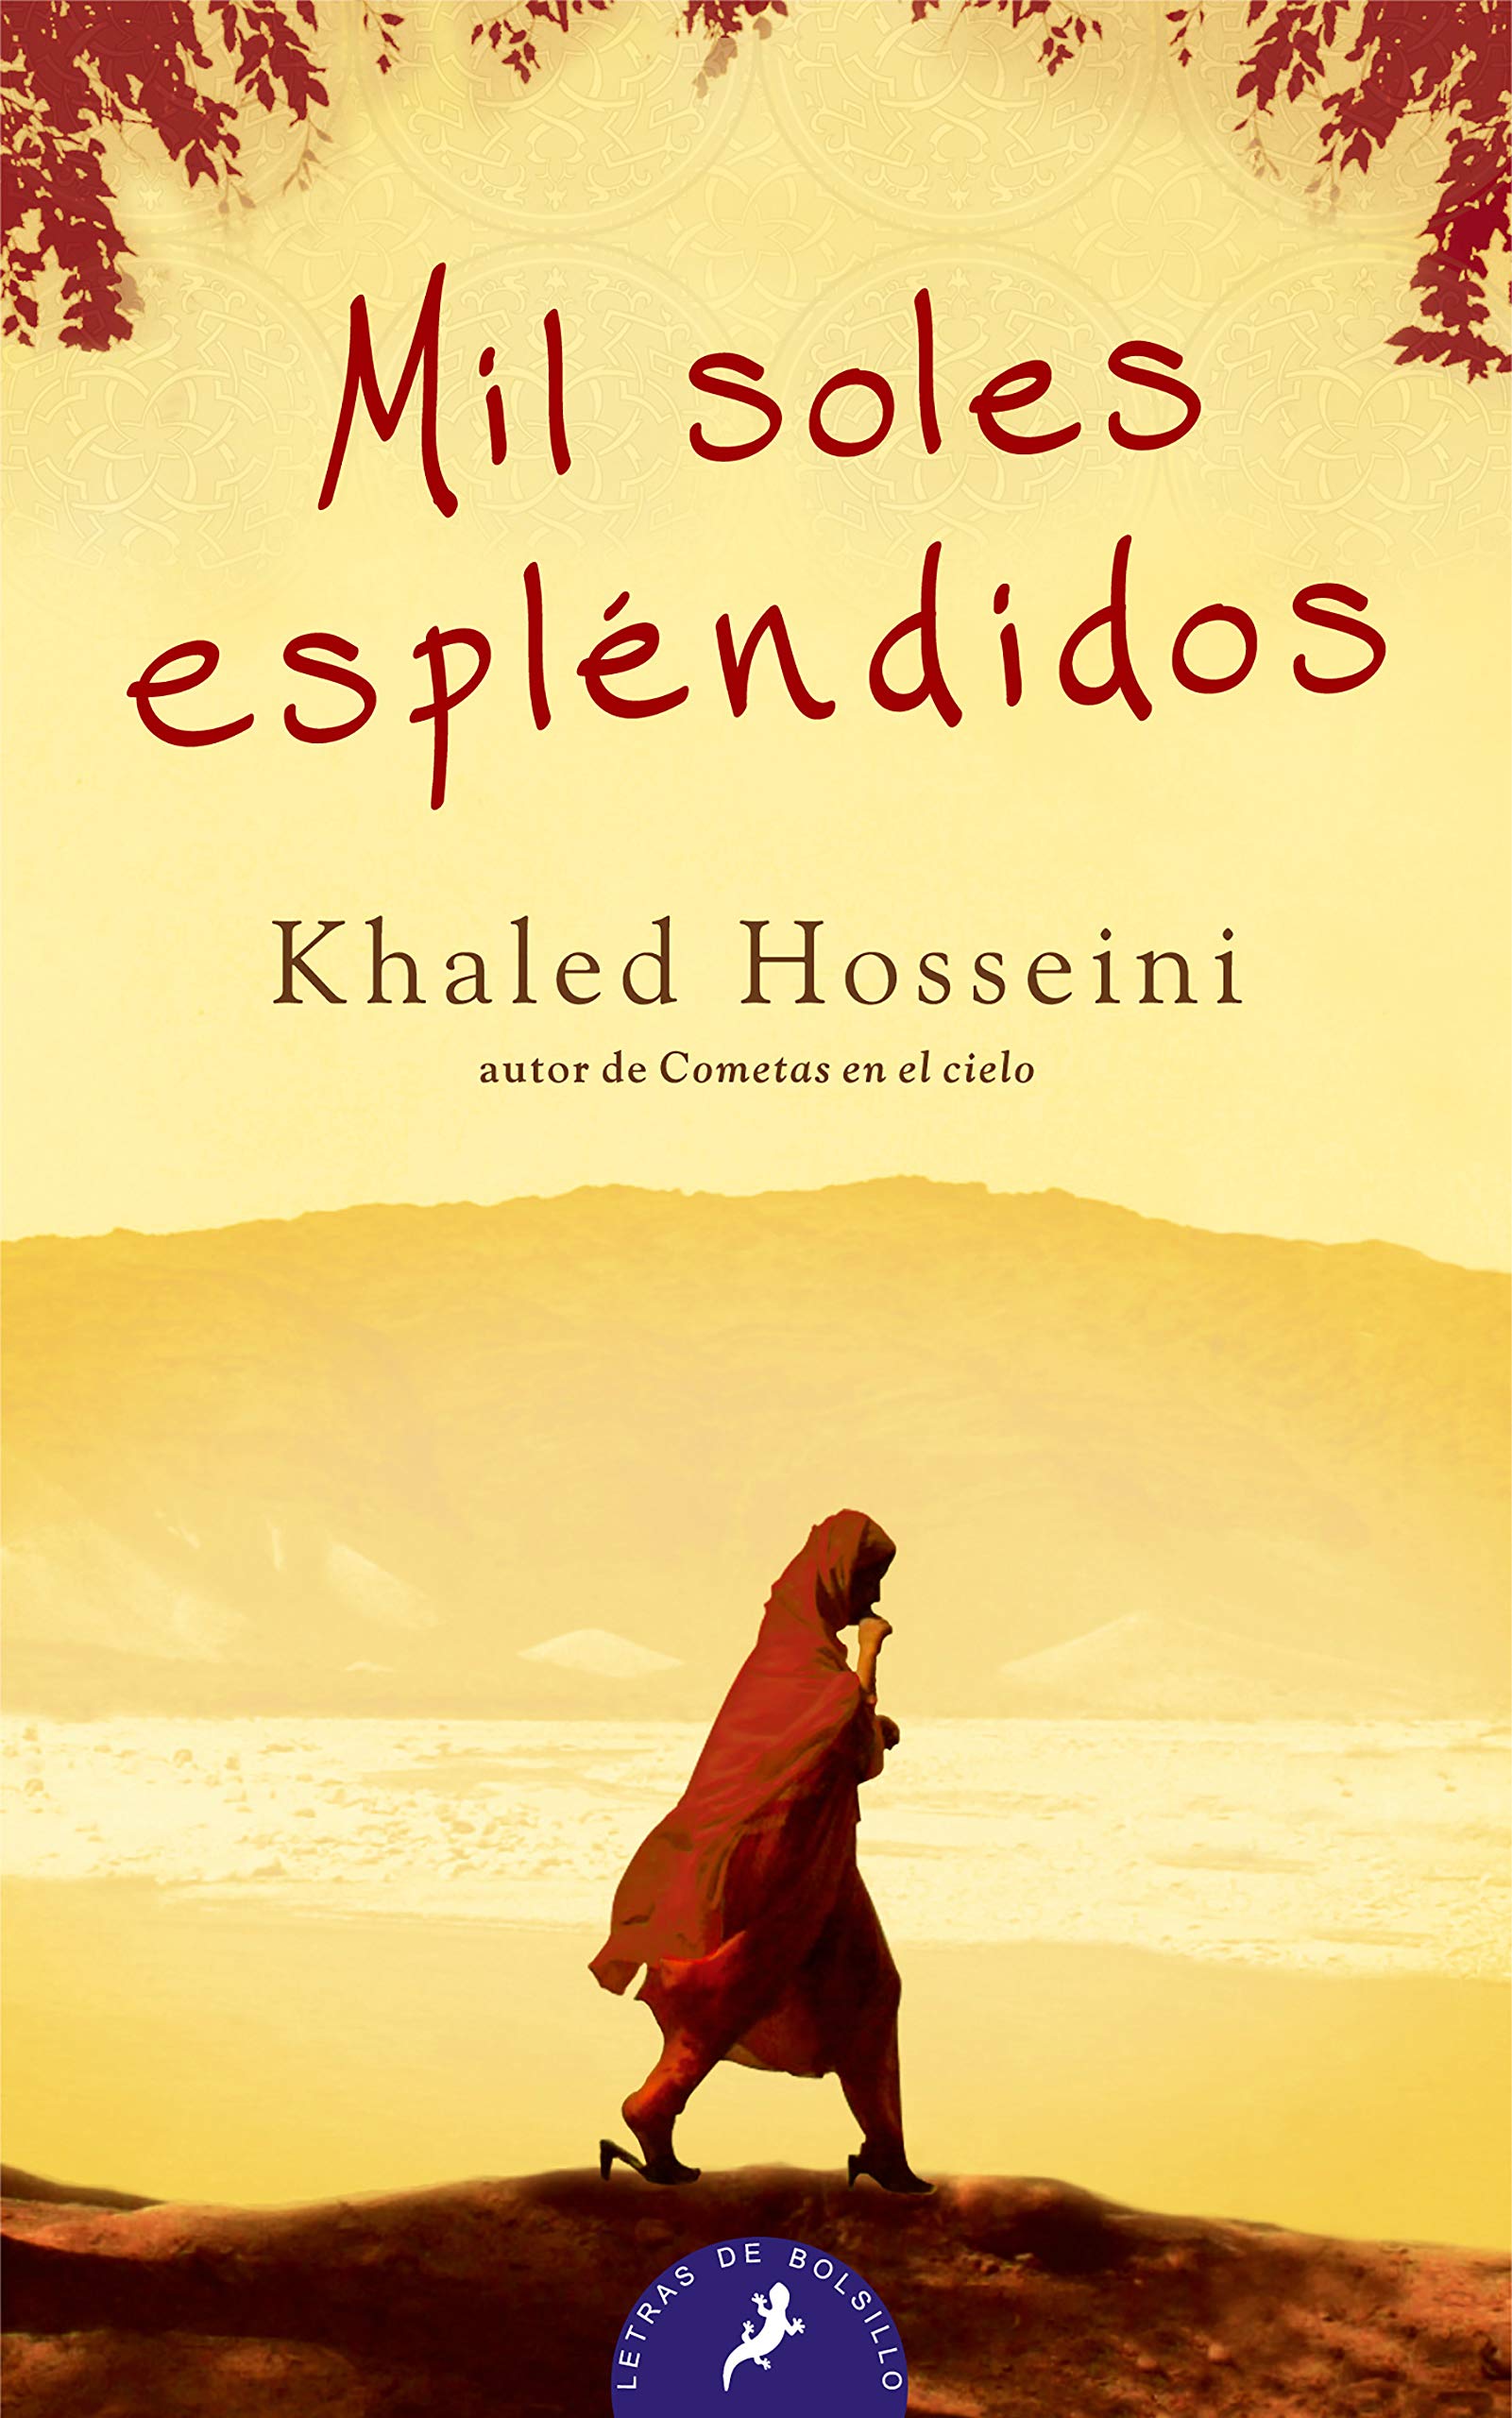 Portada Mil soles espléndidos de Khaled Hosseini - Club de Lectura de Joven Futura